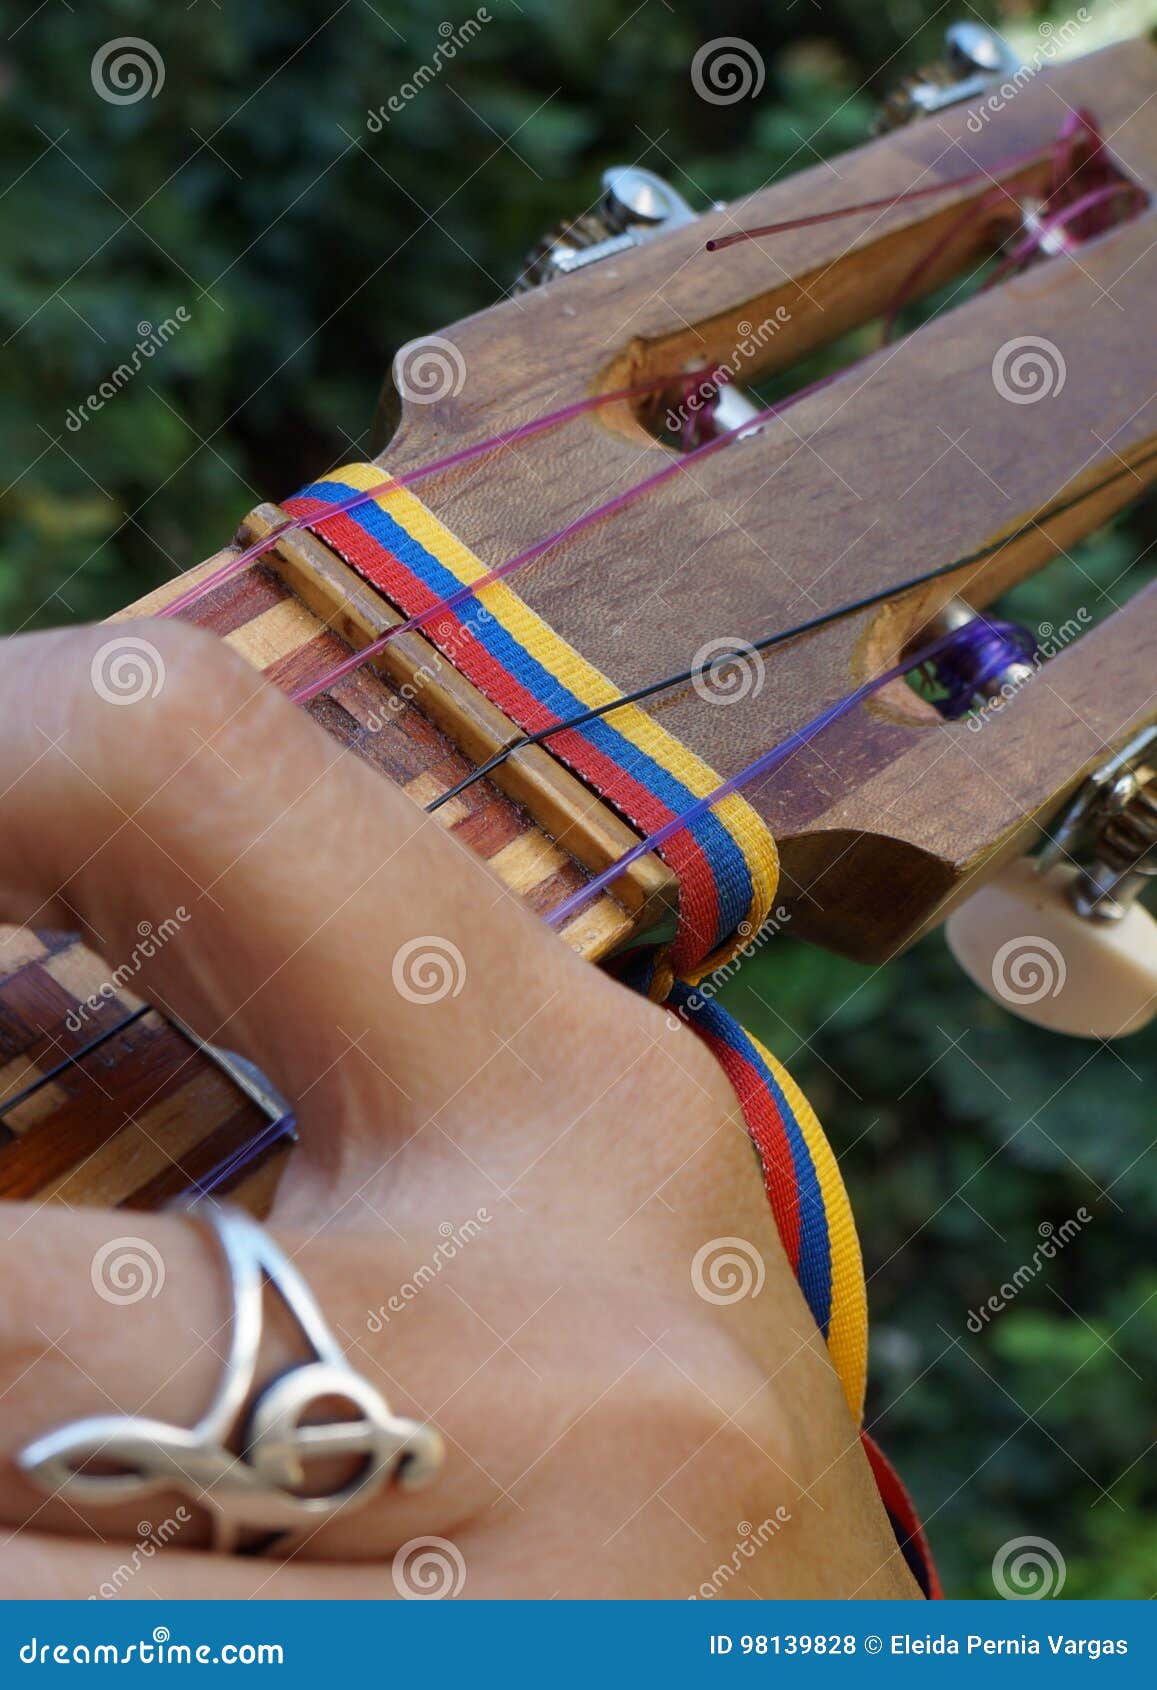 el cuatro, venezuelan musical instrument